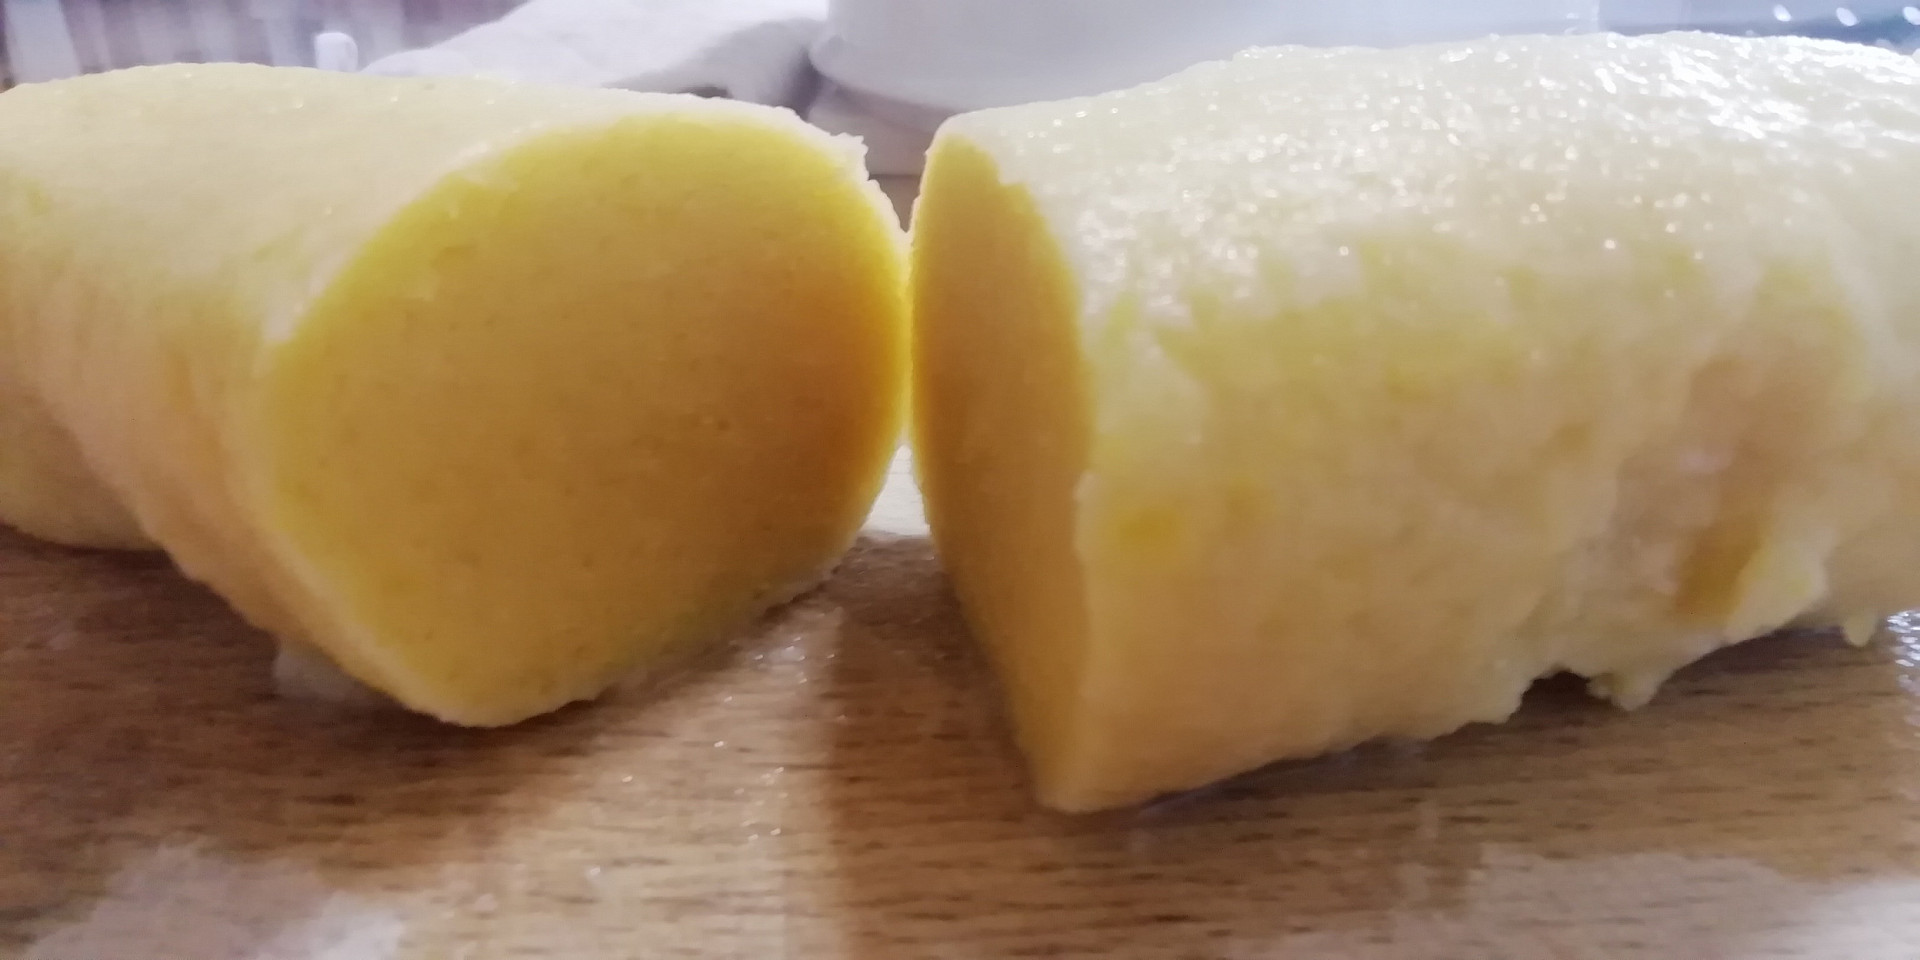 Nejjednodušší a nejrychlejší bramborové knedlíky